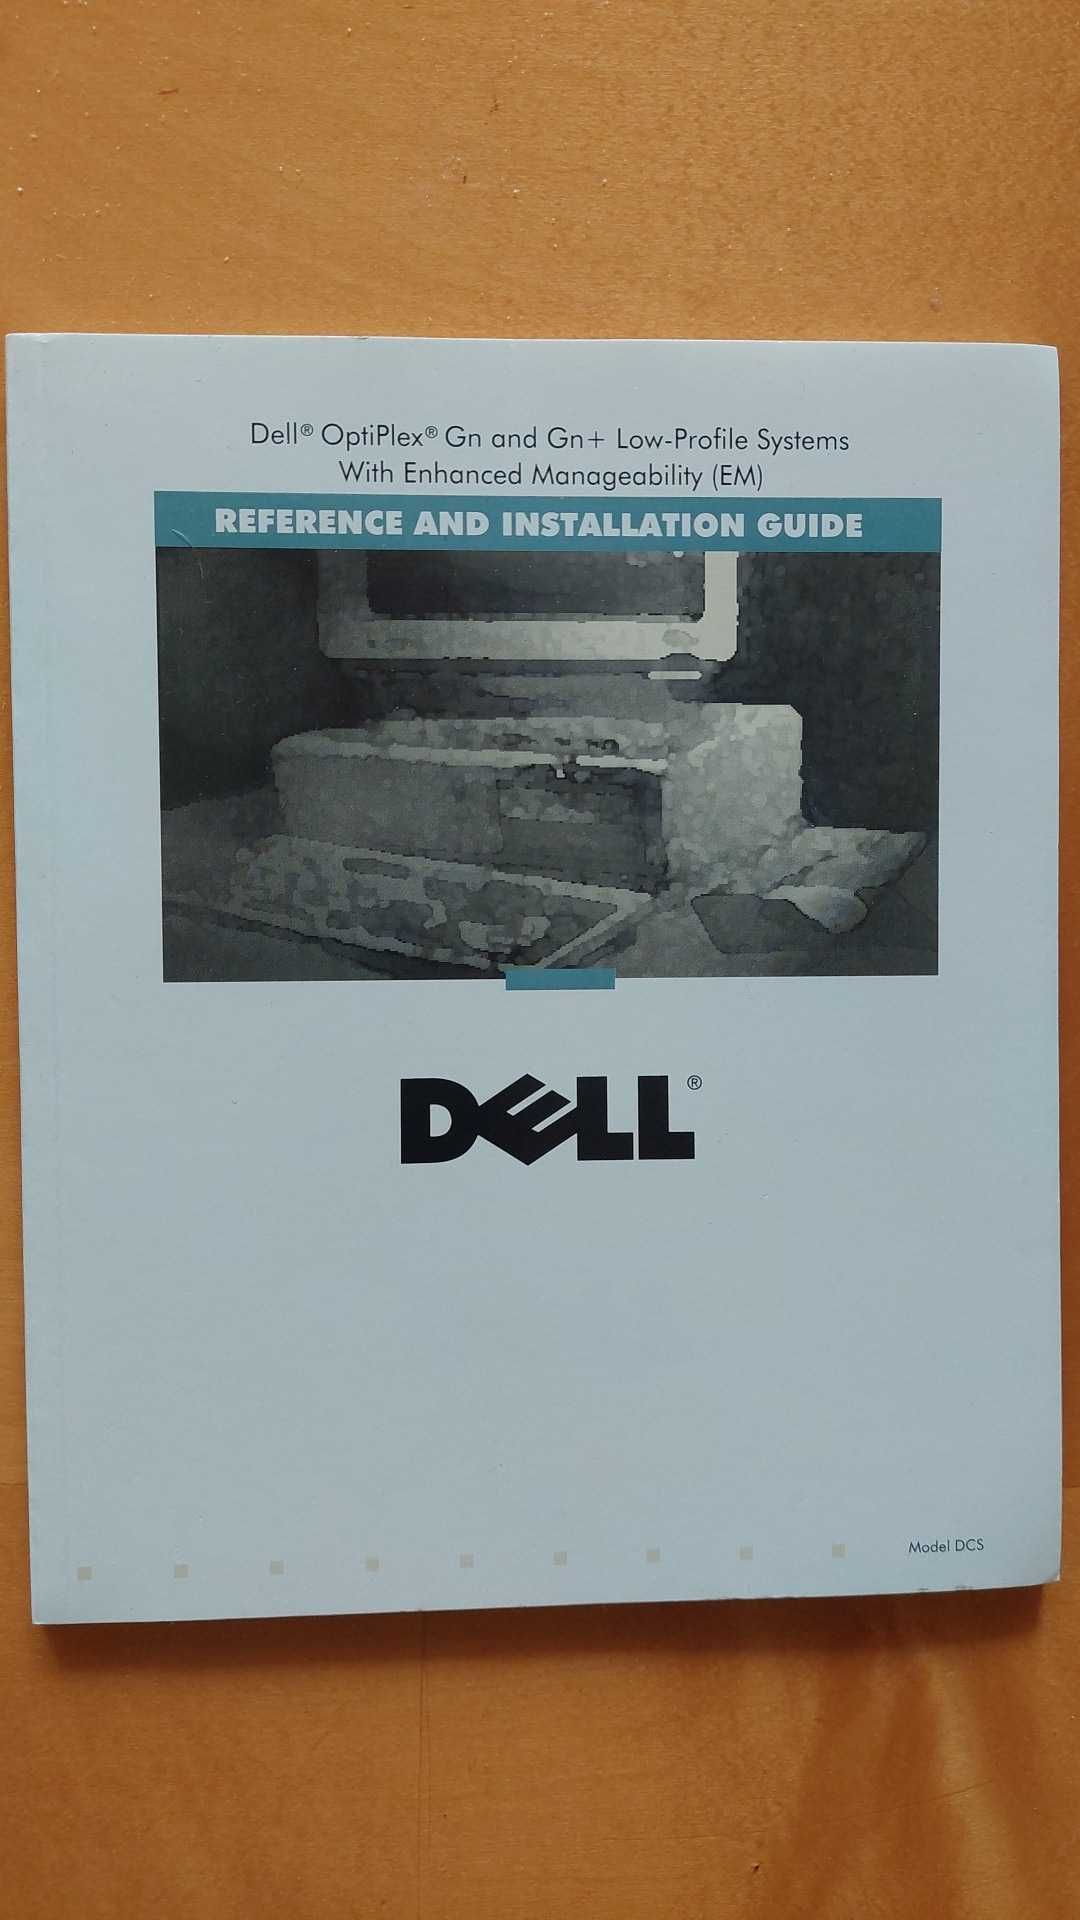 Dokumentacja do komputera Dell Optiplex Gn / Gn+